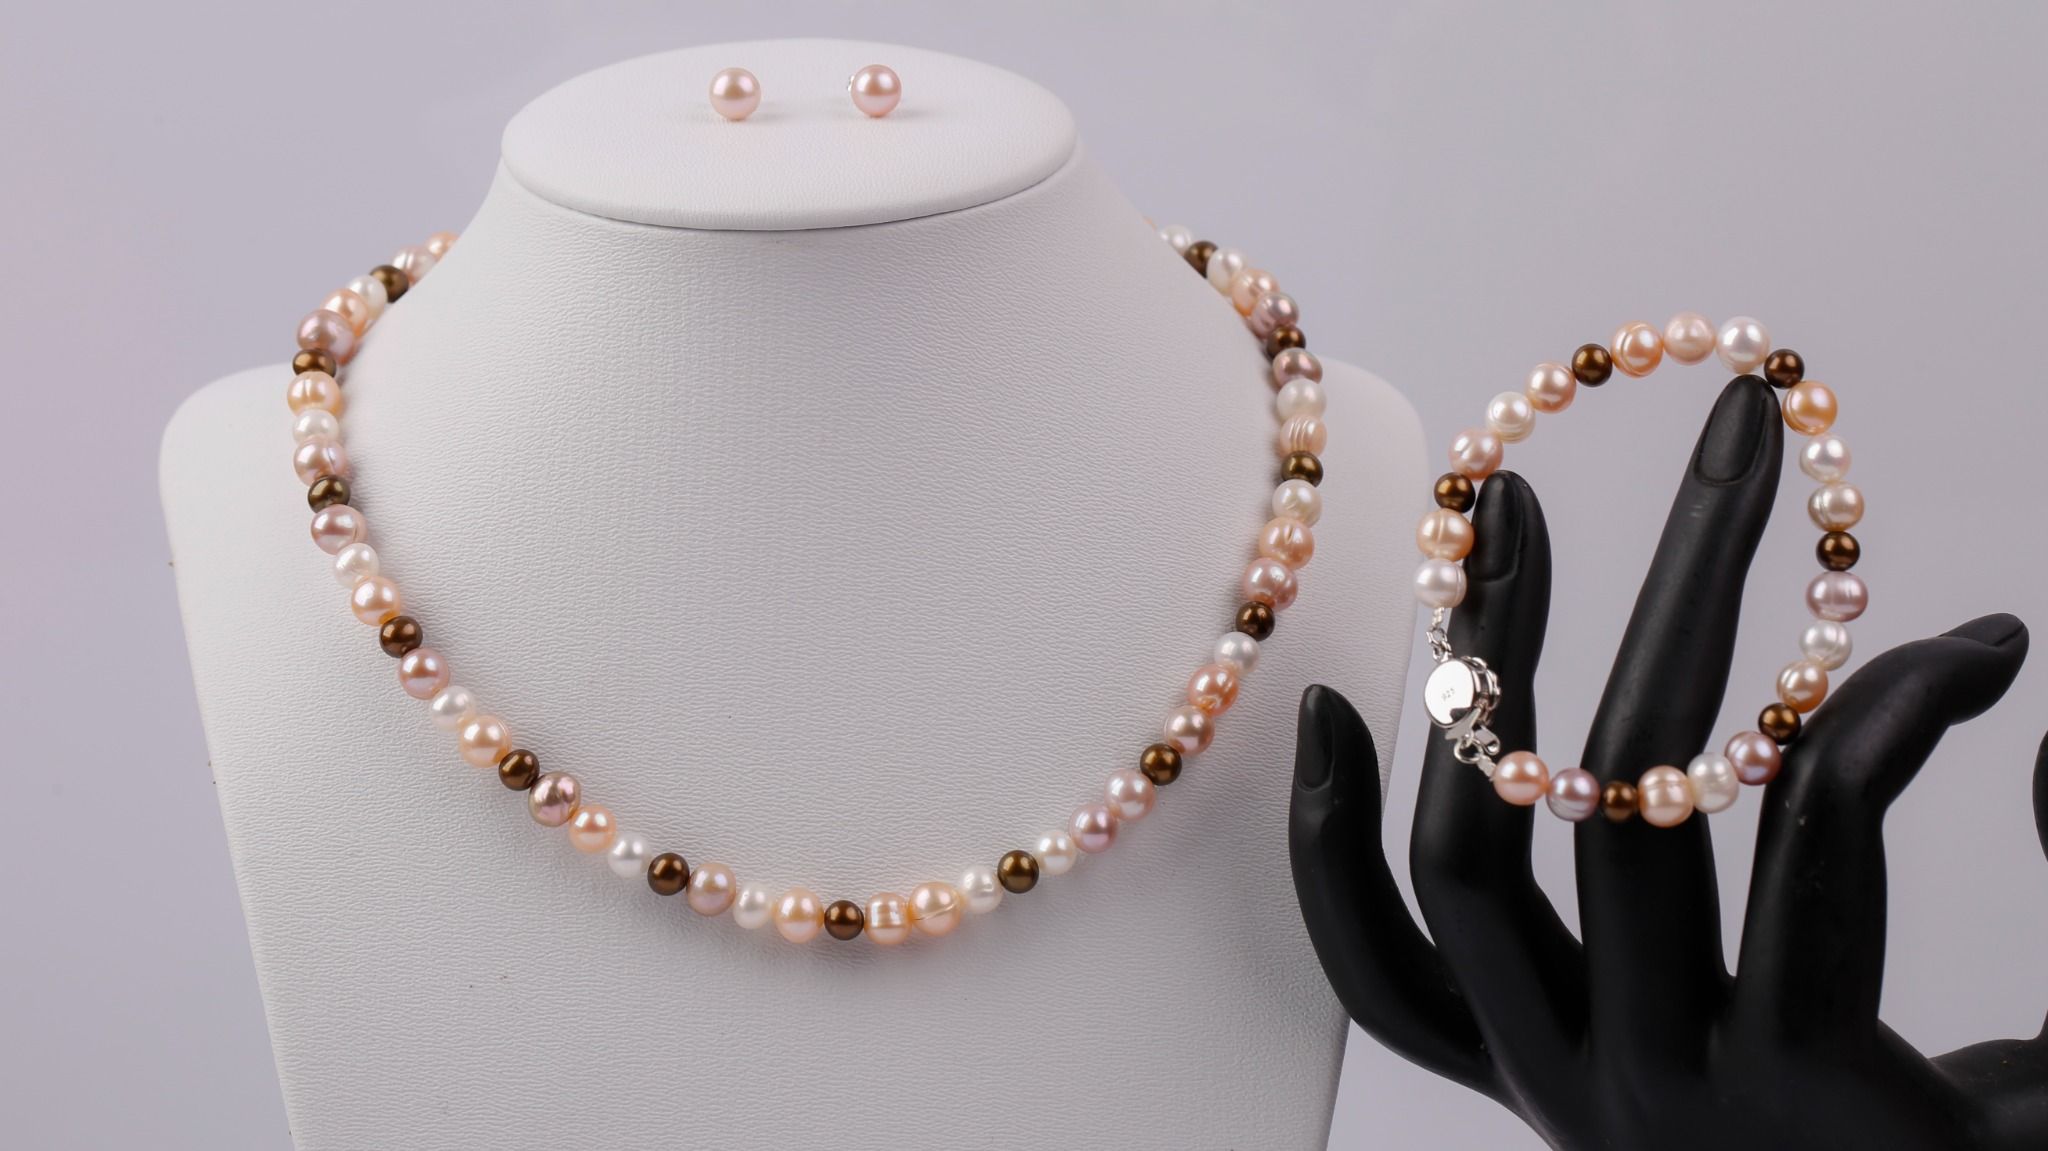  Bộ trang sức Vòng cổ-Vòng tay-Nhẫn-Hoa tai Ngọc trai nhiều màu sang trọng, tinh tế thương hiệu Opal 